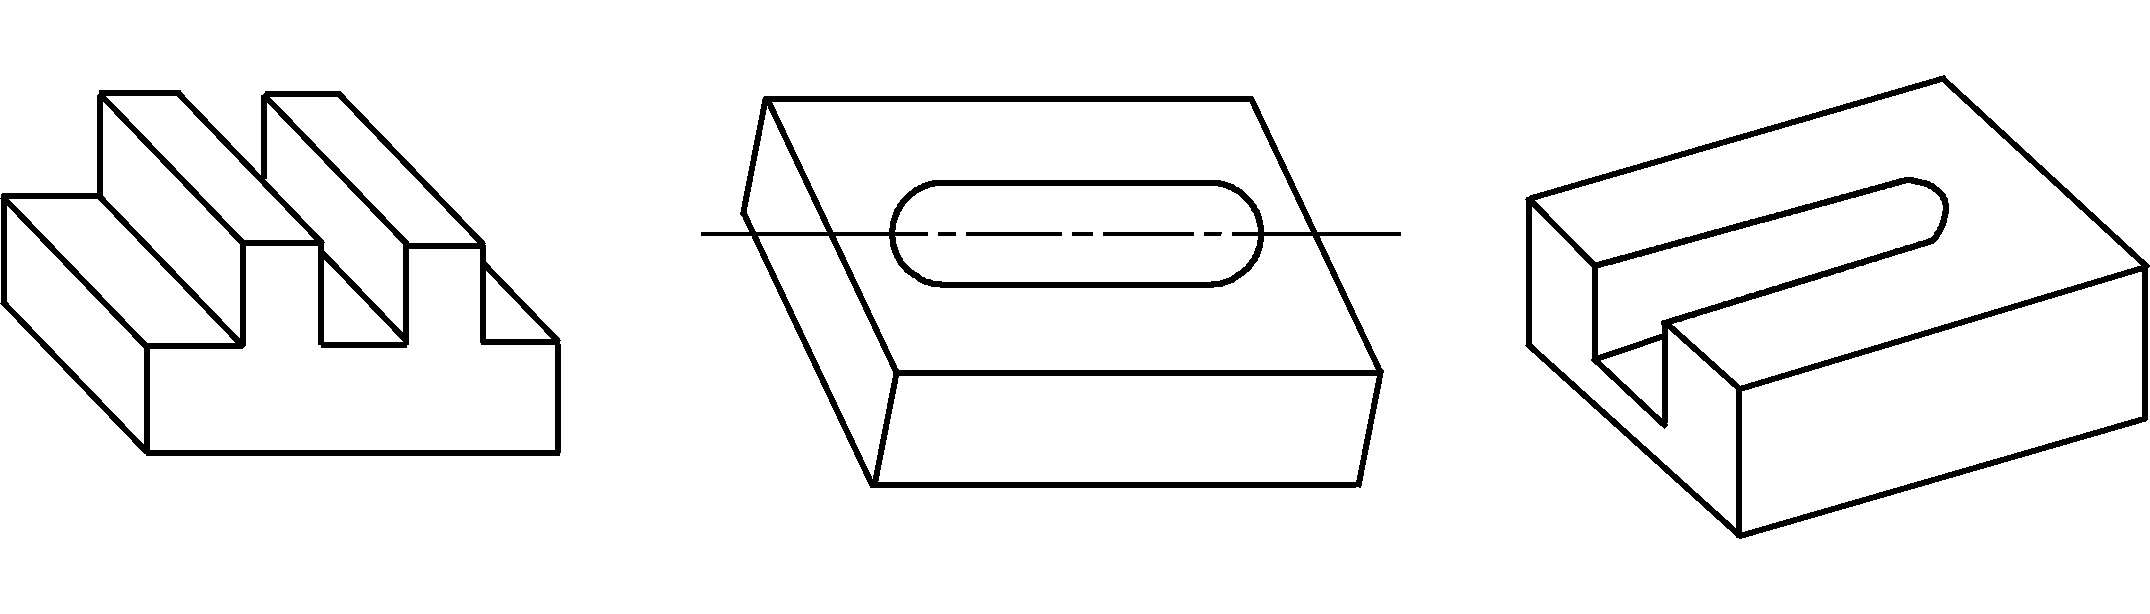 3.2.1　直角槽铣削加工技术